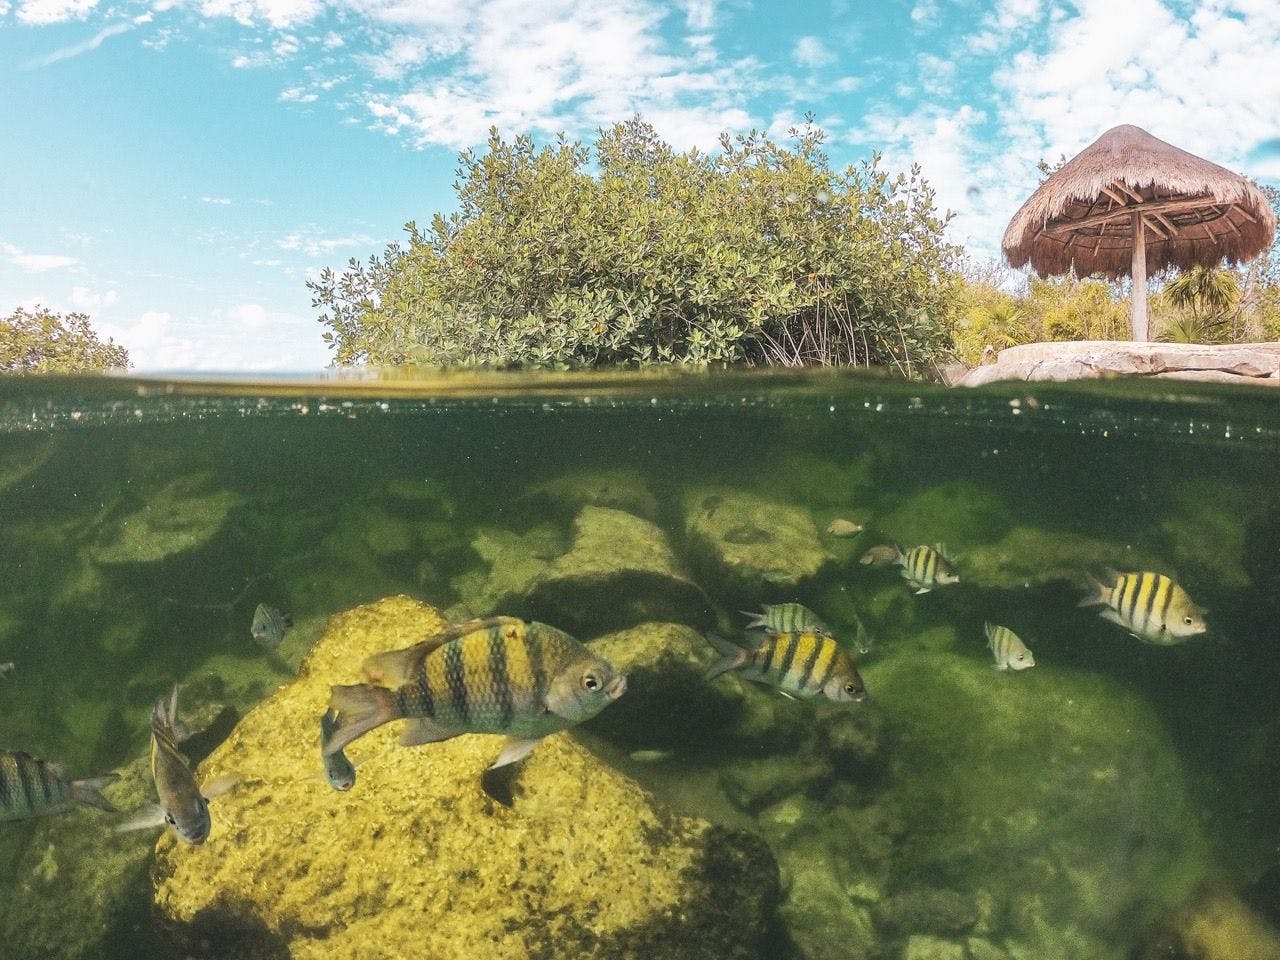 Fish swimming in cenote in Tulum Mexico